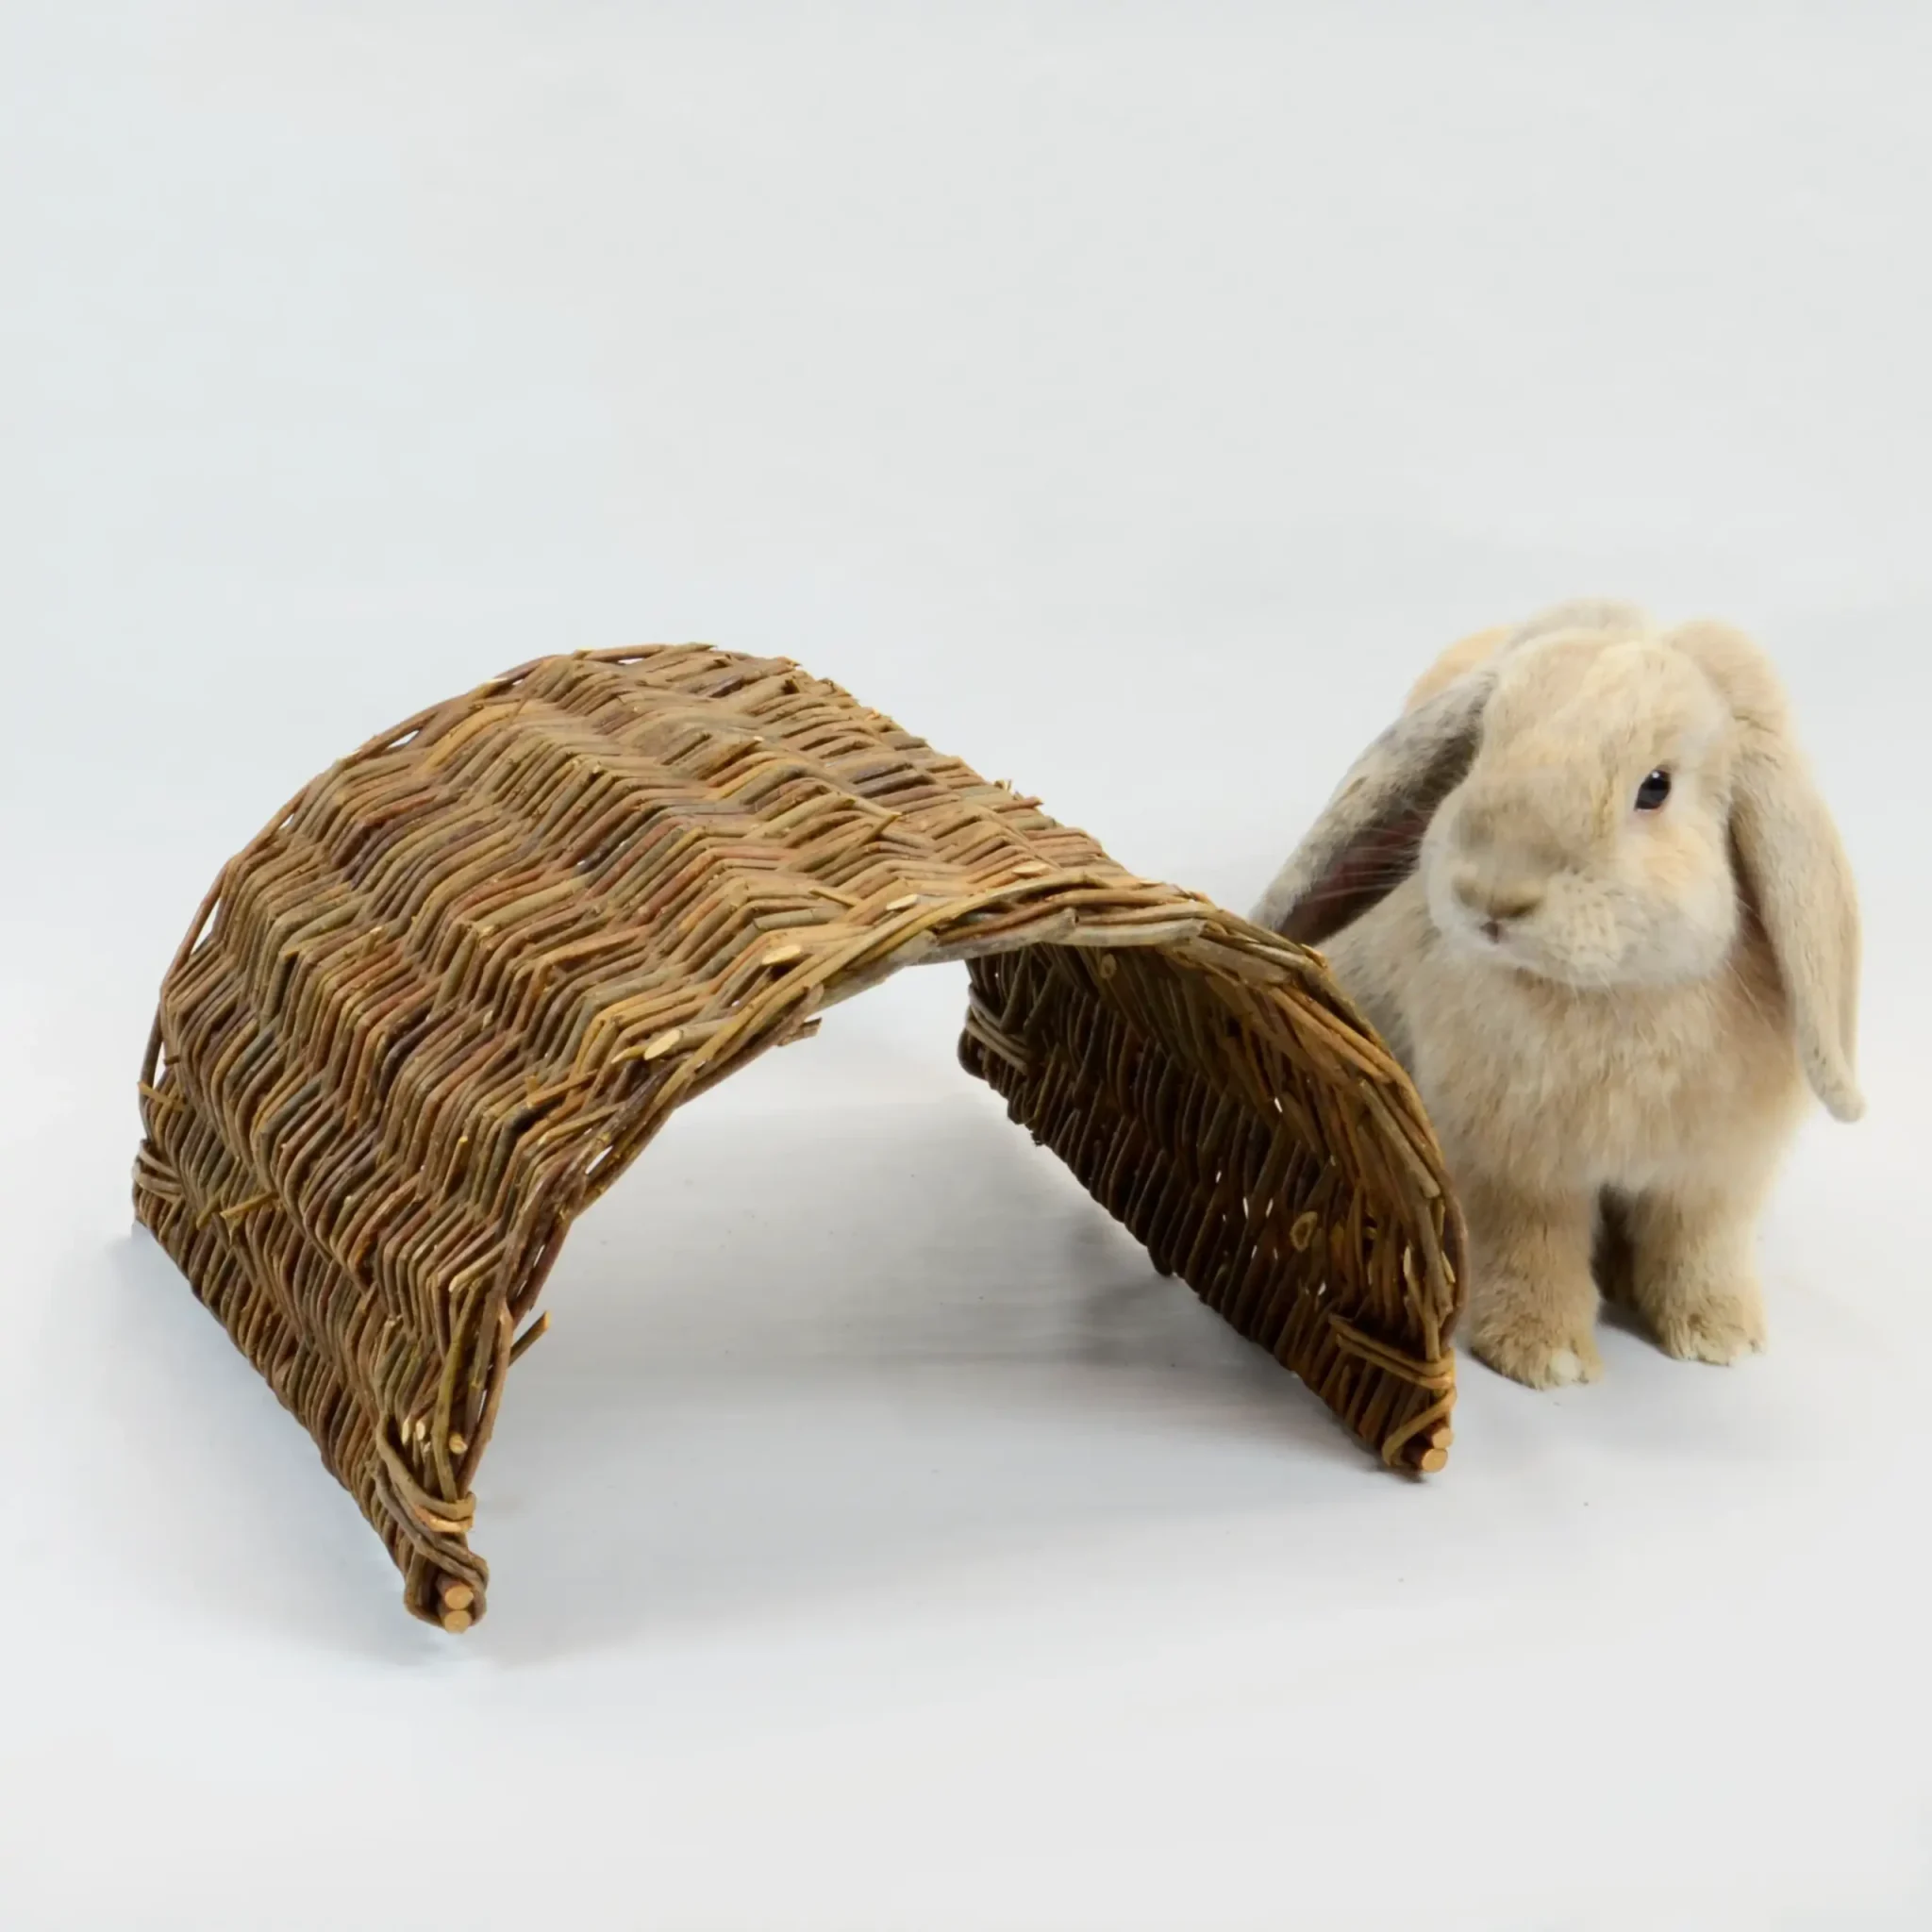 Koop online producten voor jouw konijn!